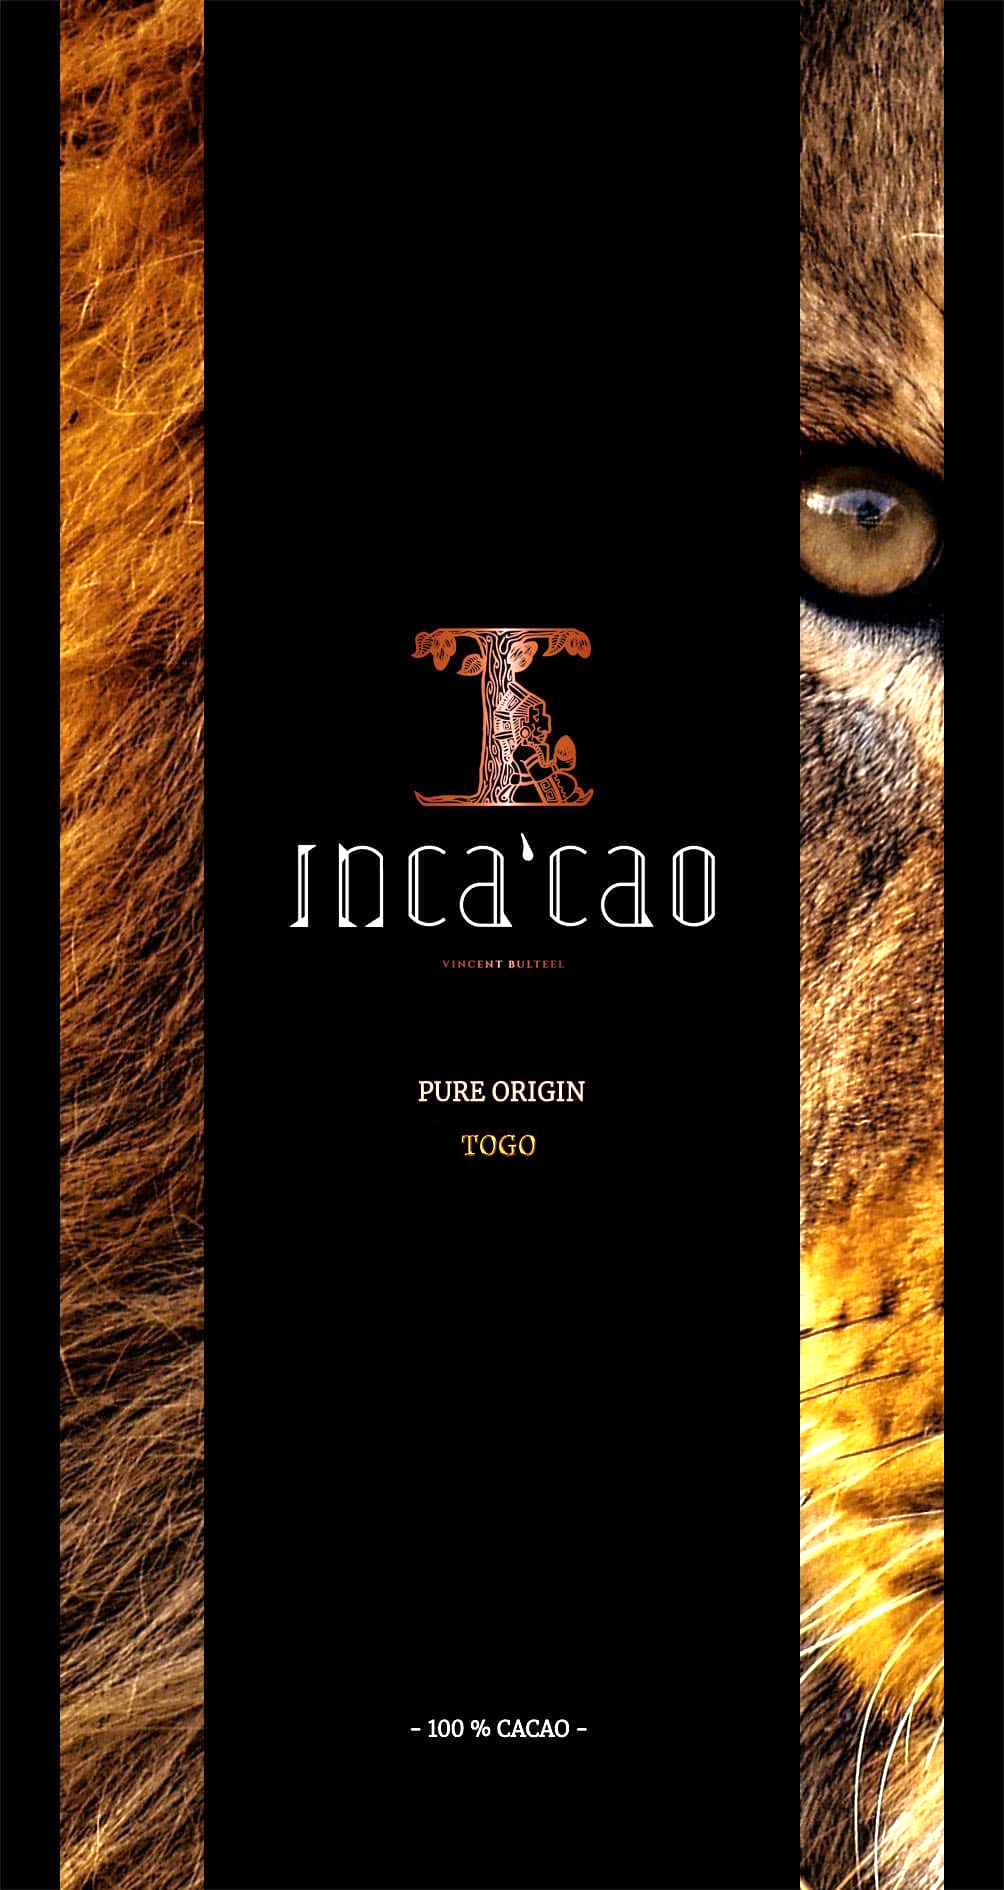 INCACAO | 100% čokoláda ze západní Afriky, Togo - 45g